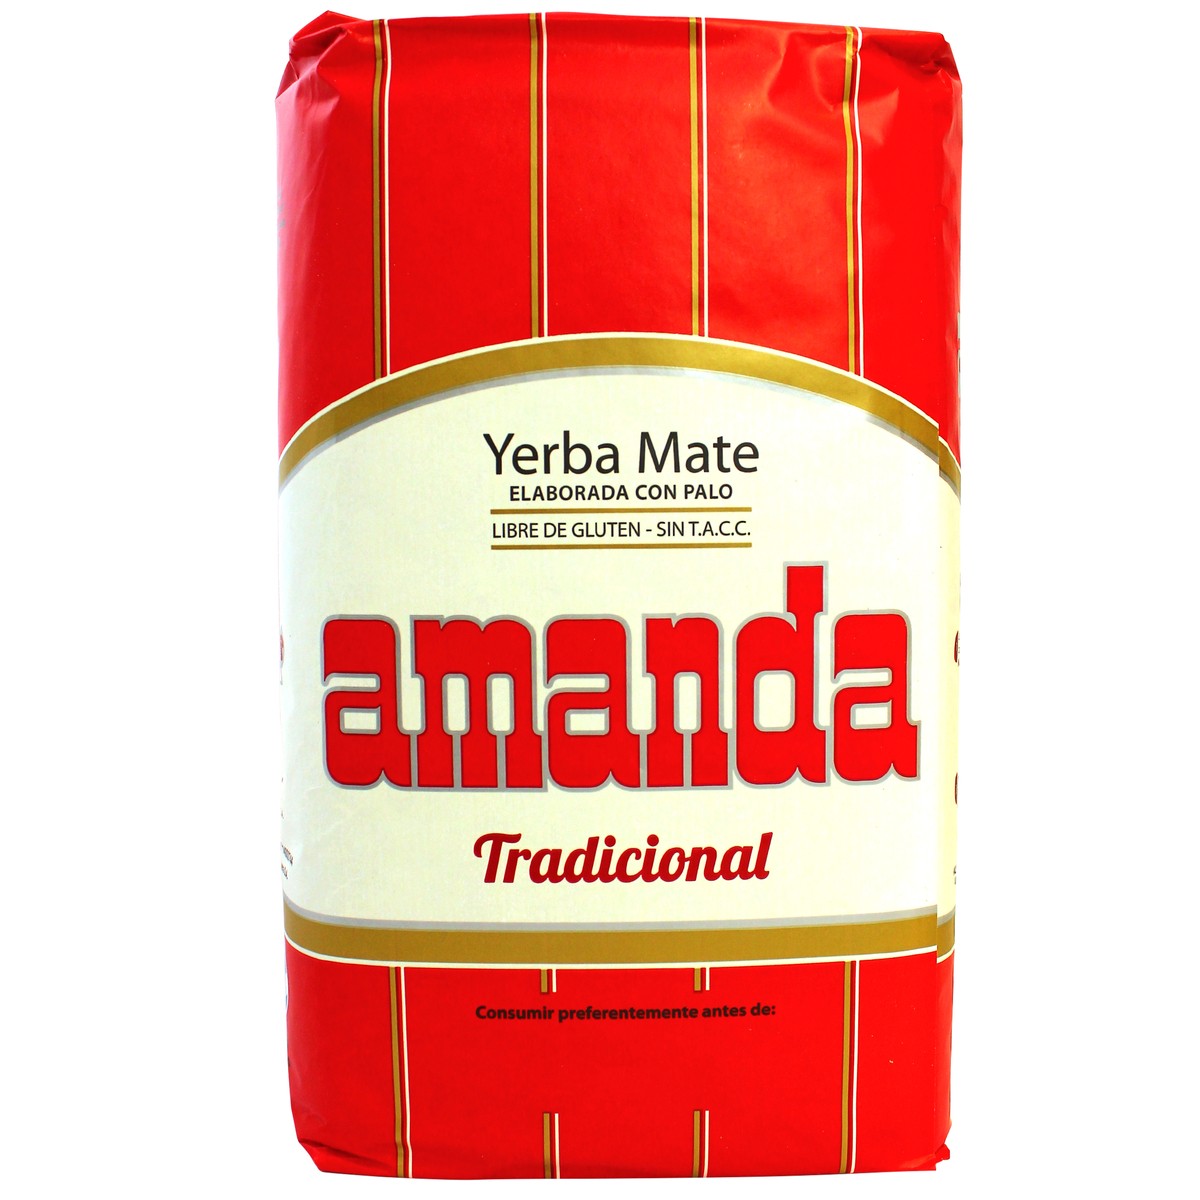 Amanda - Elaborada | yerba mate | 500g